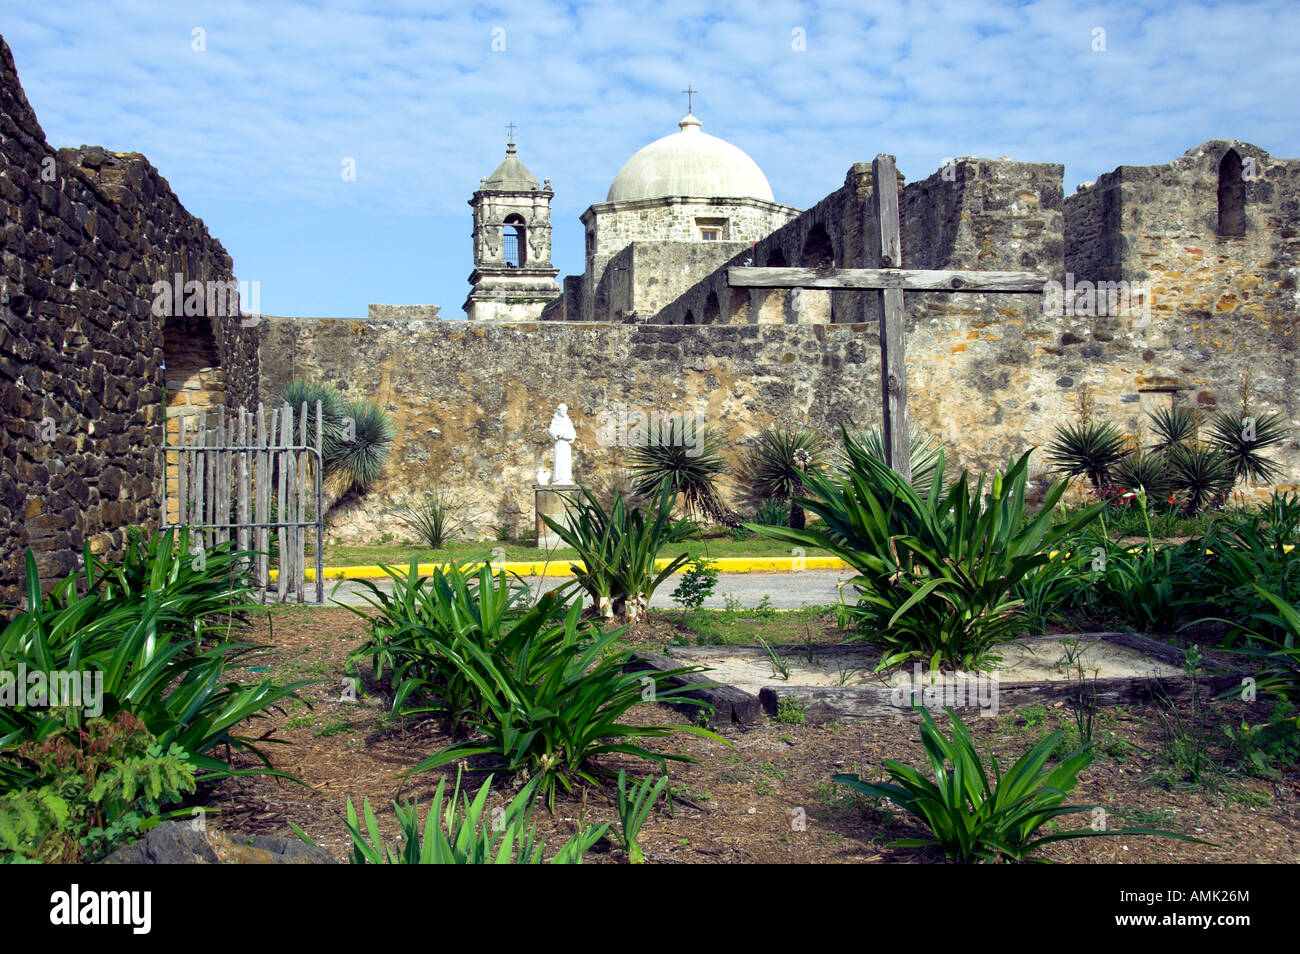 The historic Mission San Jose y San Miguel de Aguayo in San Antonio Texas USA Stock Photo